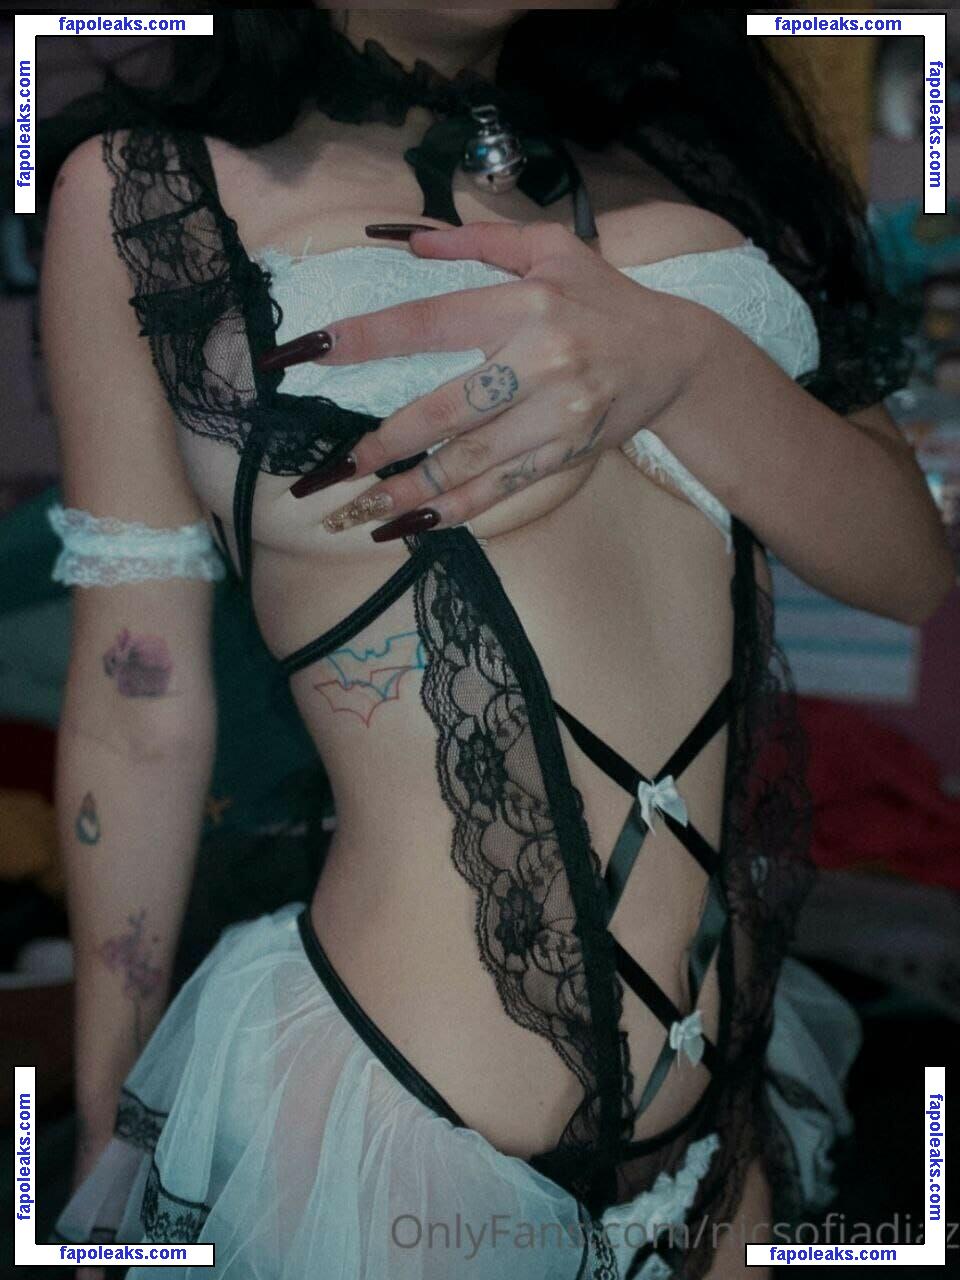 Sofia Diaz / nicsofiadiaz nude photo #0014 from OnlyFans